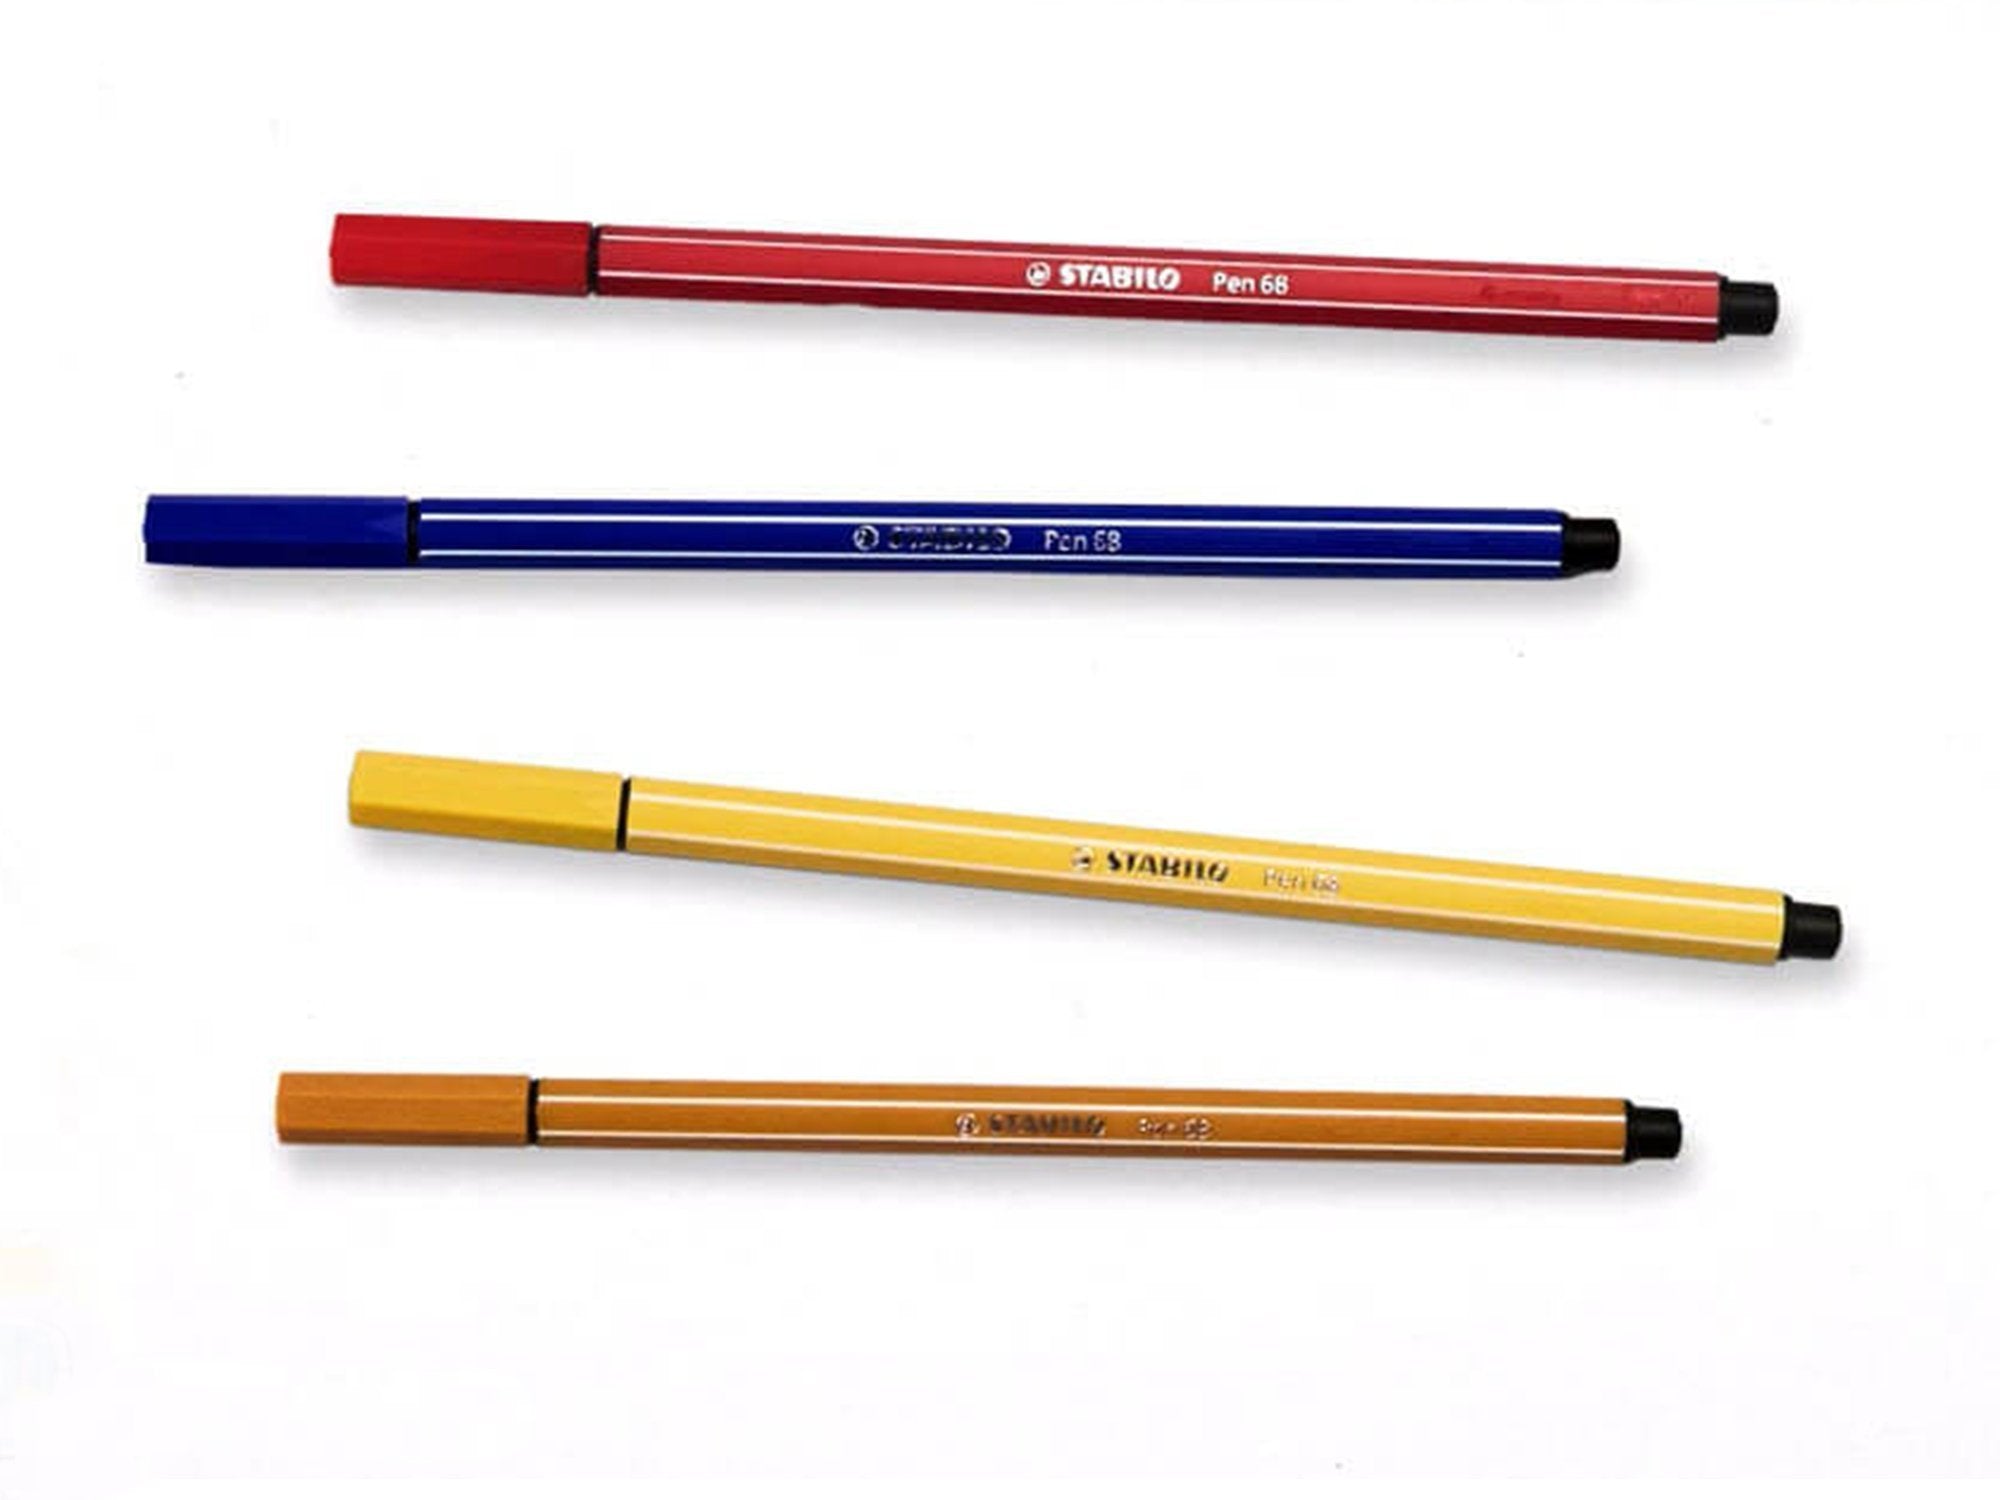  STABILO Premium Fibre-Tip Pen Pen 68 brush - Tin of